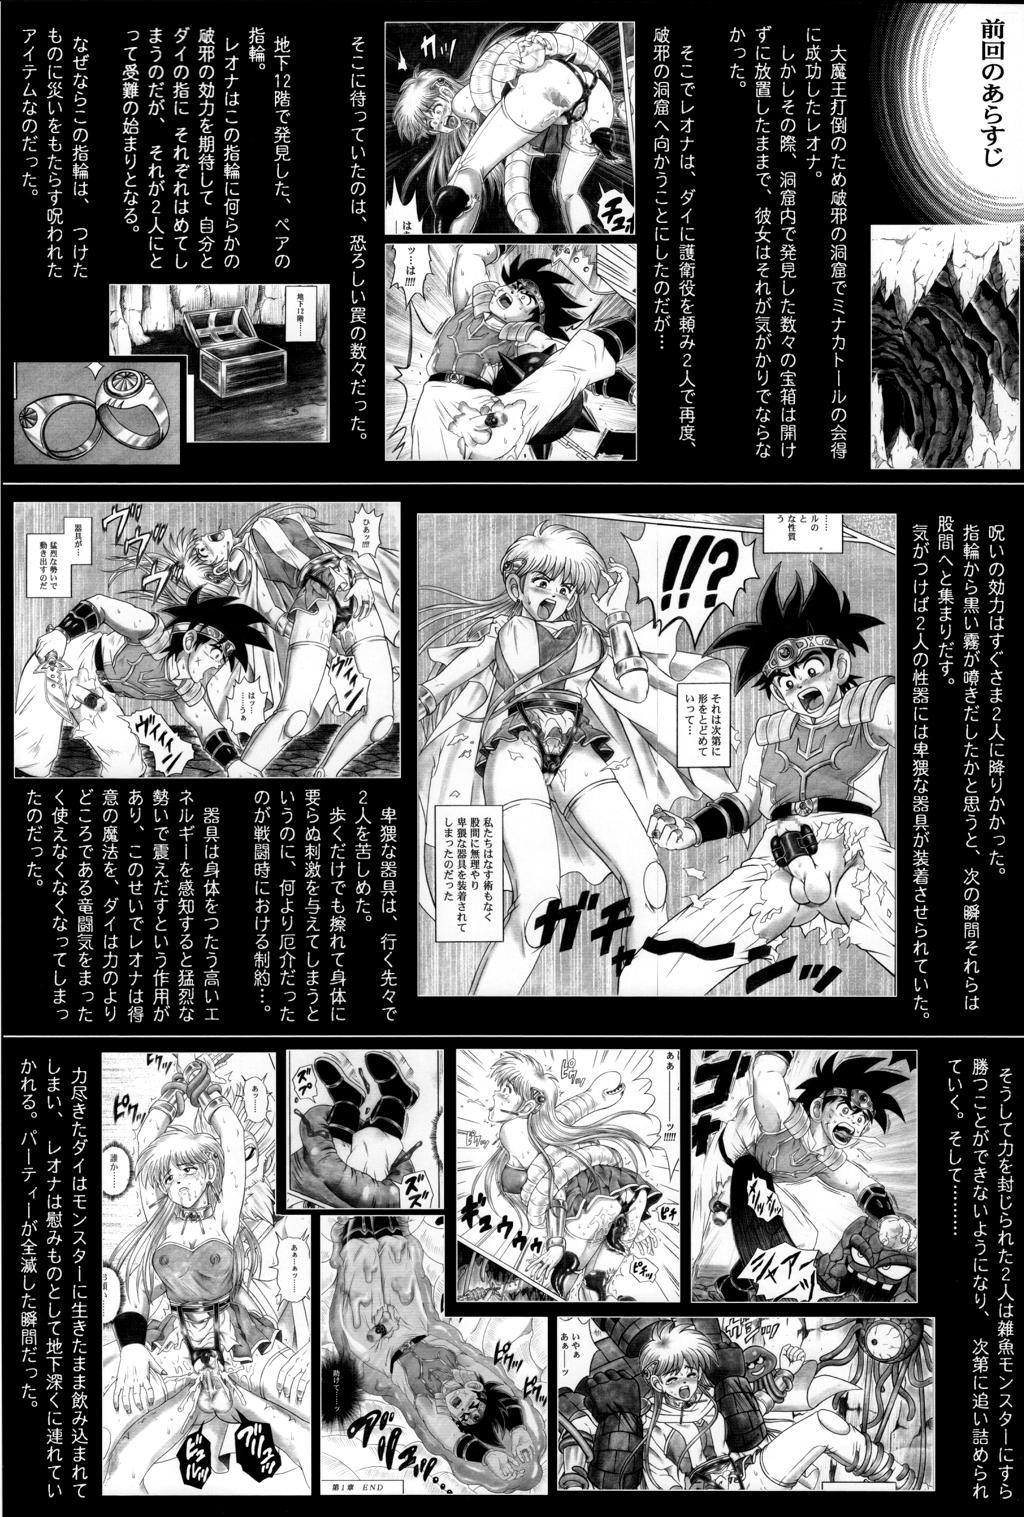 College (C71) [Cyclone (Reizei, Izumi)] STAR TAC IDO ~Youkoso Haja no Doukutsu e~ Dai 4 Shou (Dragon Quest Dai no Daibouken) - Dragon quest dai no daibouken Room - Page 2